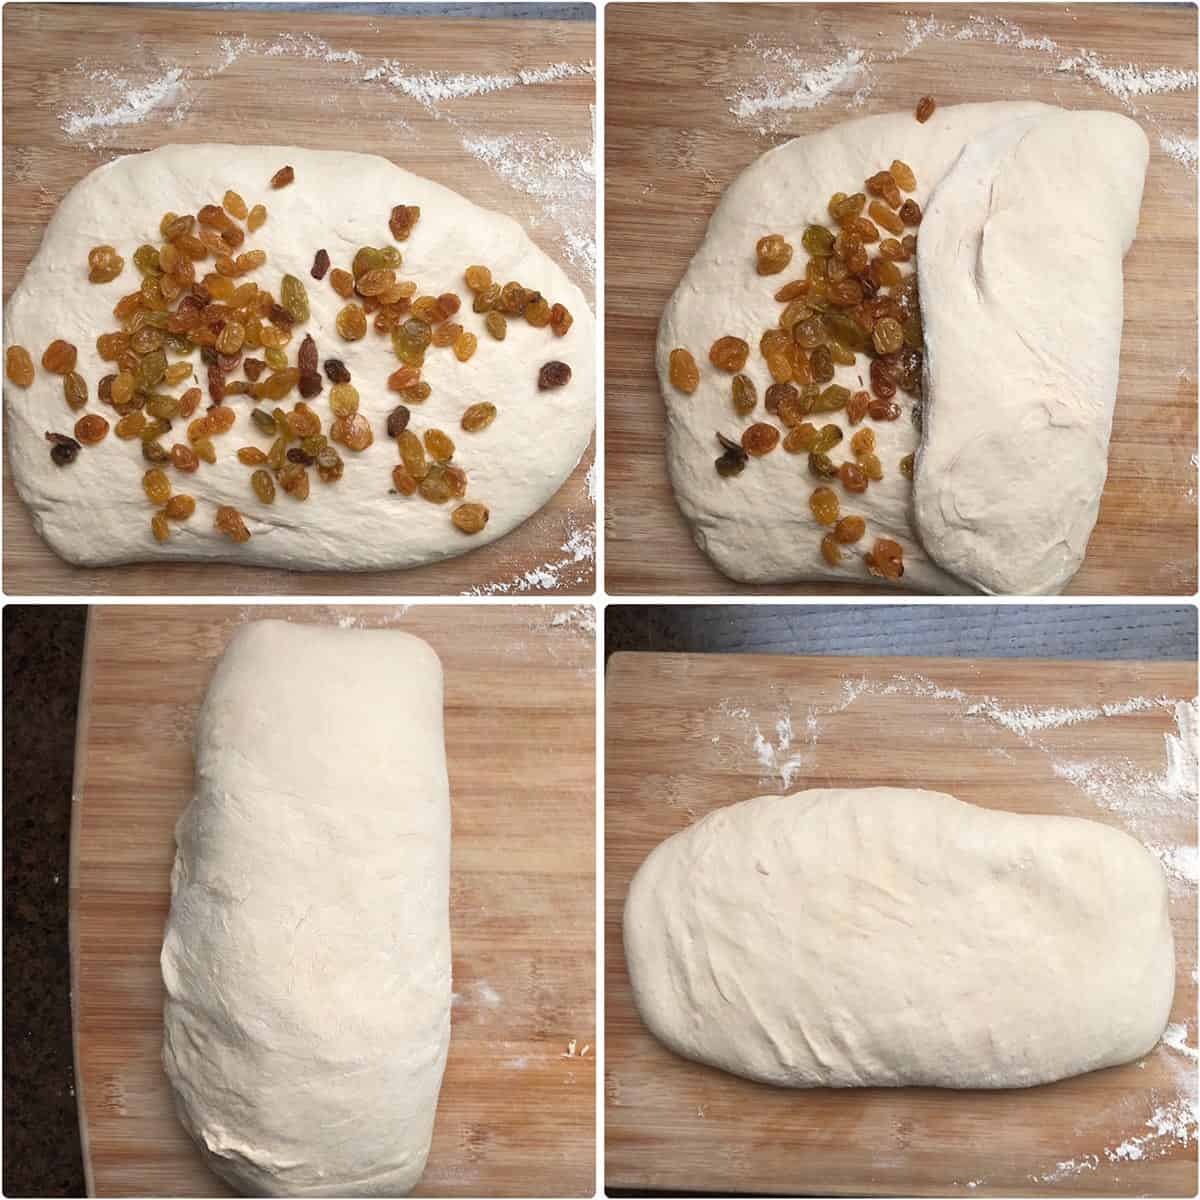 Folding in raisins into a sourdough dough